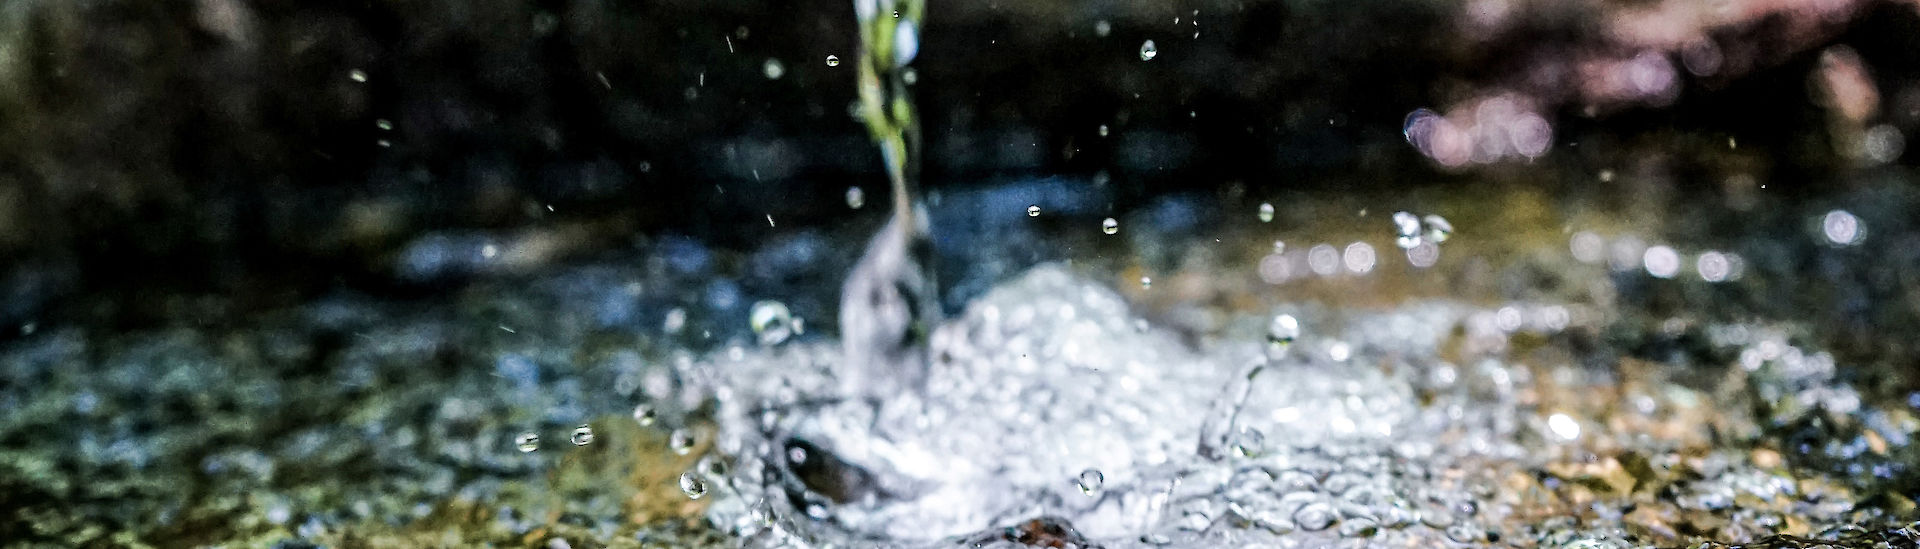 Projekt zur Regenwassergewinnung in Fetteh Kakraba